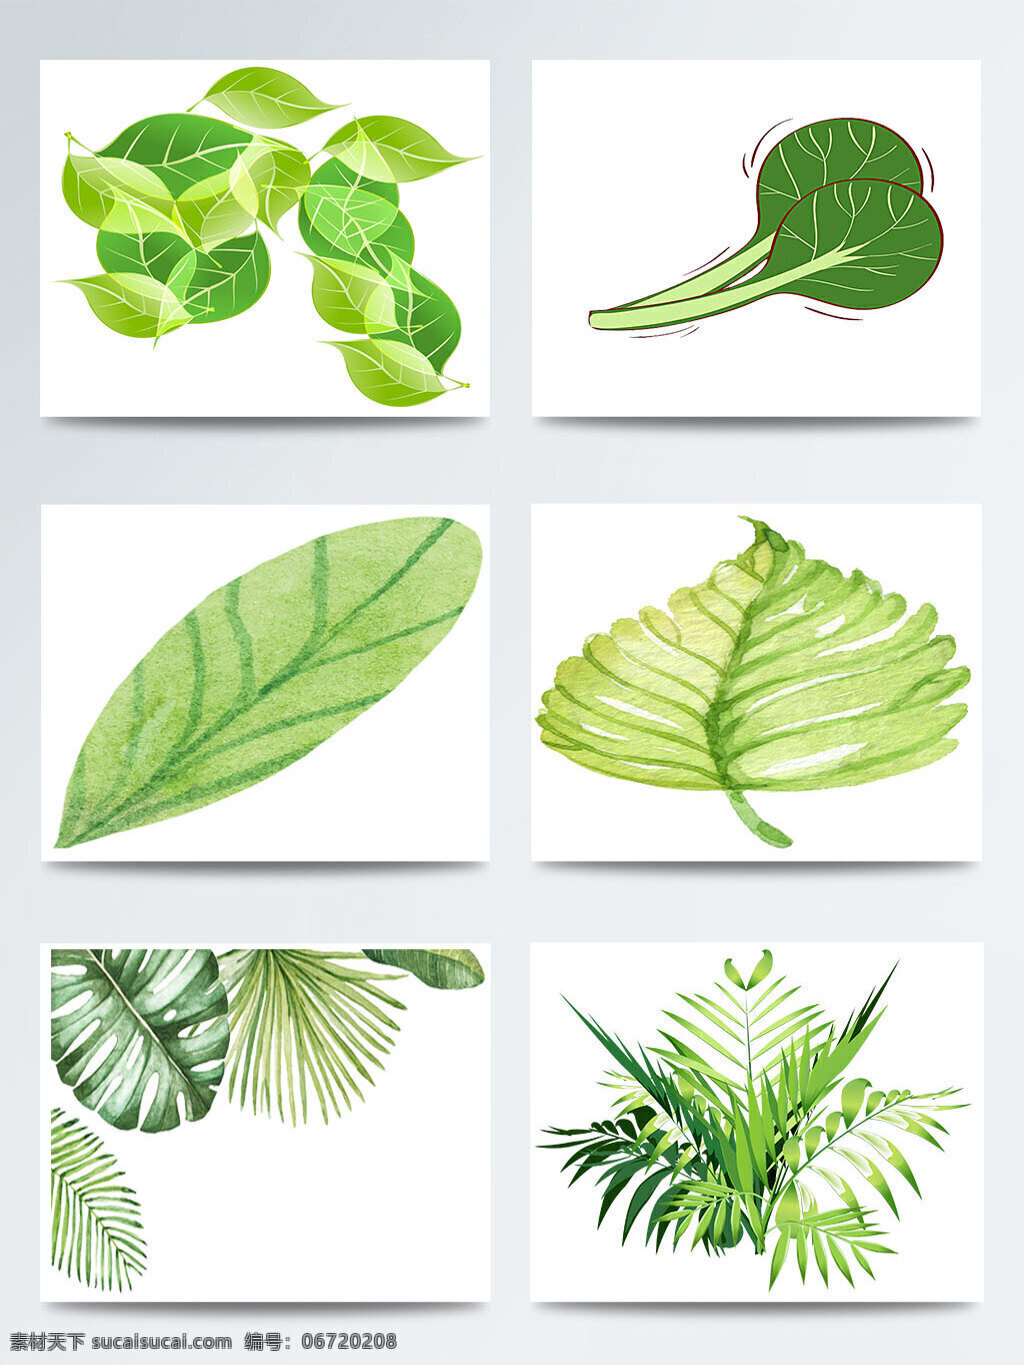 二十四节气 立春 手绘 树叶 元素 图案 传统 节气 卡通叶子 立春节气 绿色